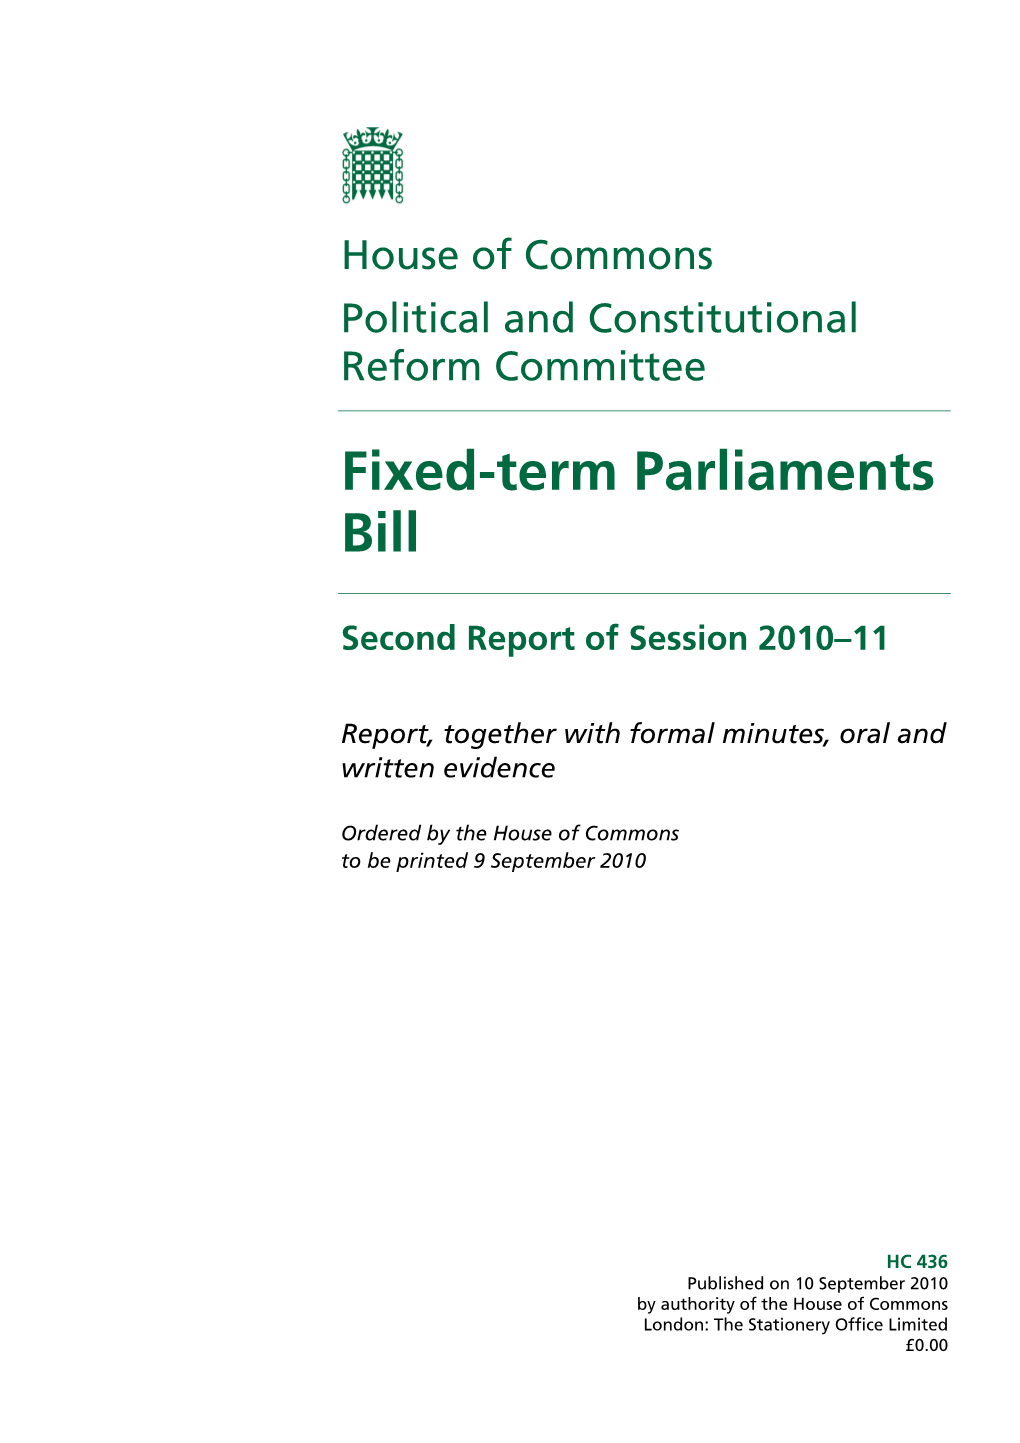 Fixed-Term Parliaments Bill